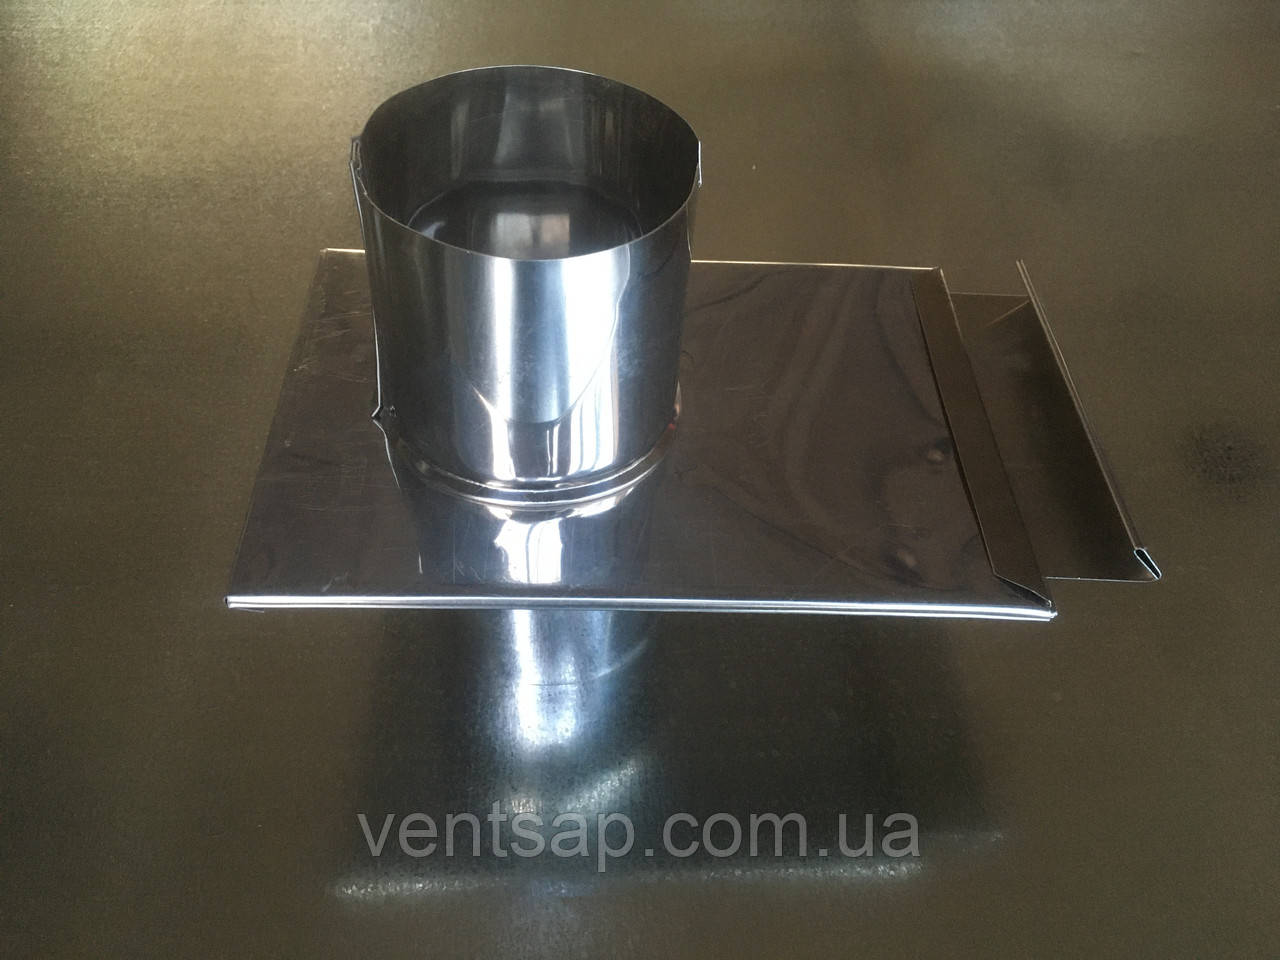 Шибер неіржавіюча сталь 0,8 мм, діаметр 180 мм димохід , вентиляція